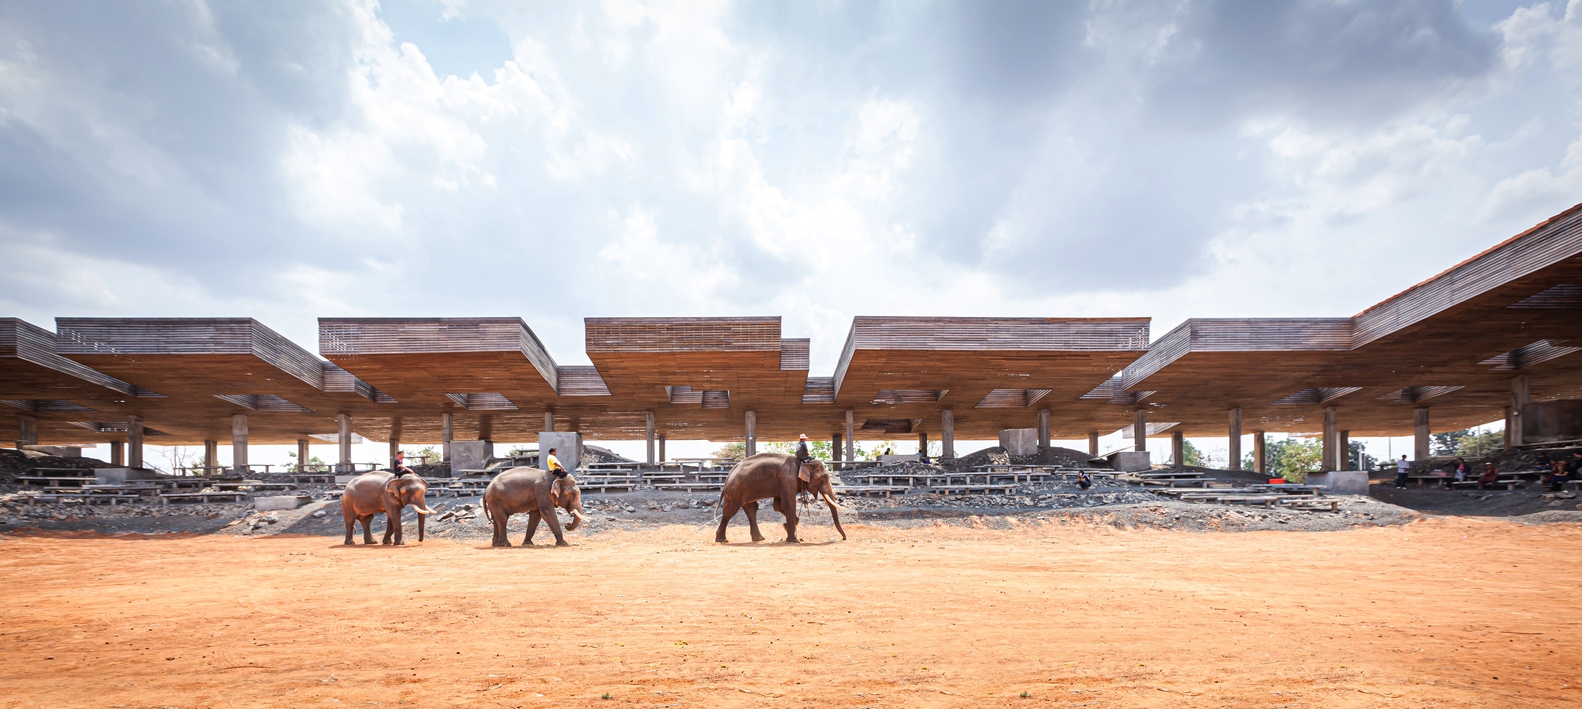 Elefántvilág projekt, Ban Ta Klang, Thaiföld. Kulturális tér, 2020